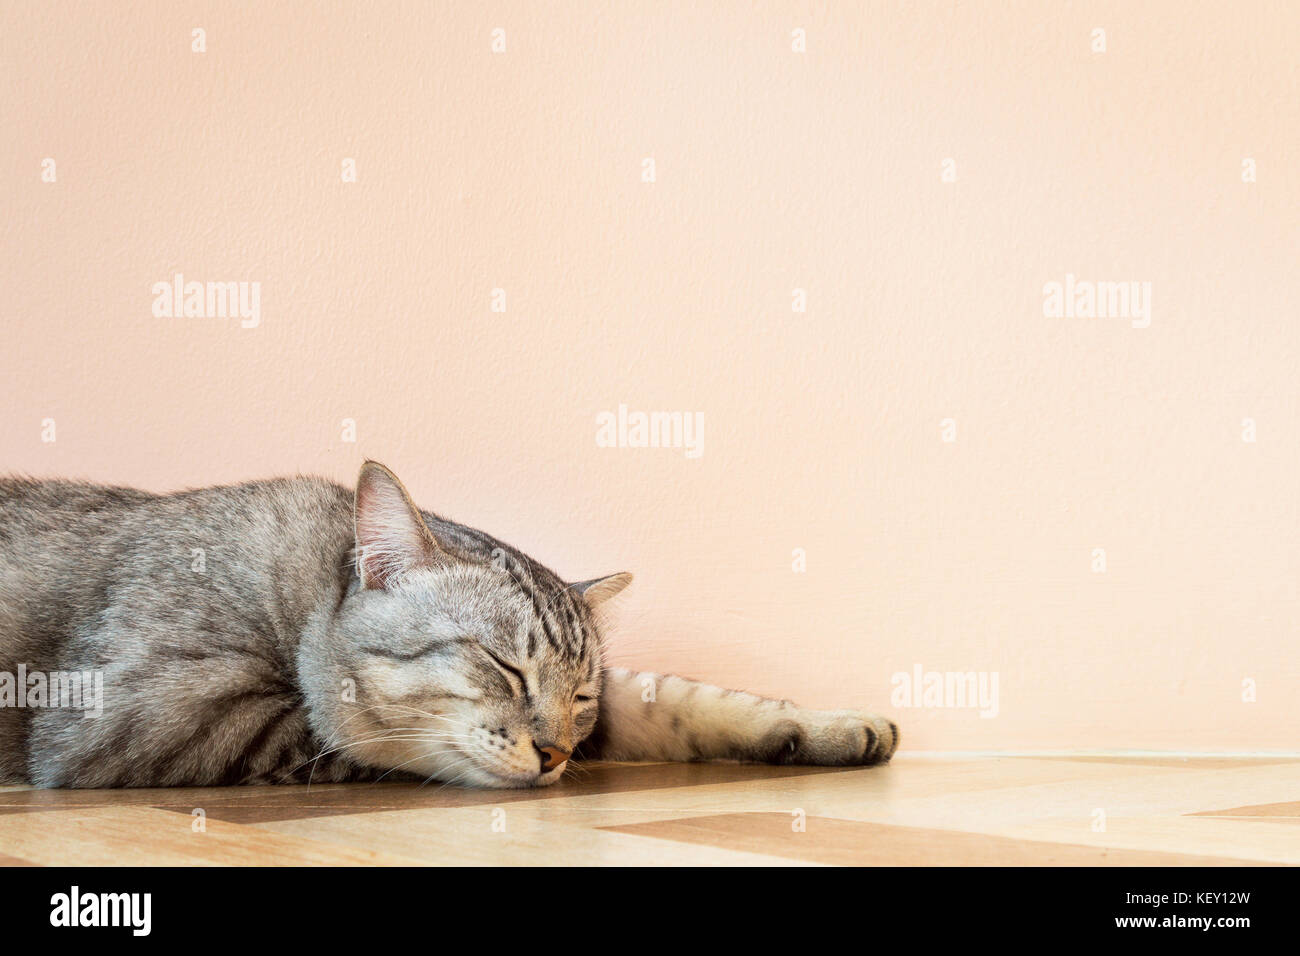 American Shorthair gato durmiendo en el suelo con la pared naranja en la hermosa sala de cine y fotografía de estilo vintage con copyspace. Foto de stock